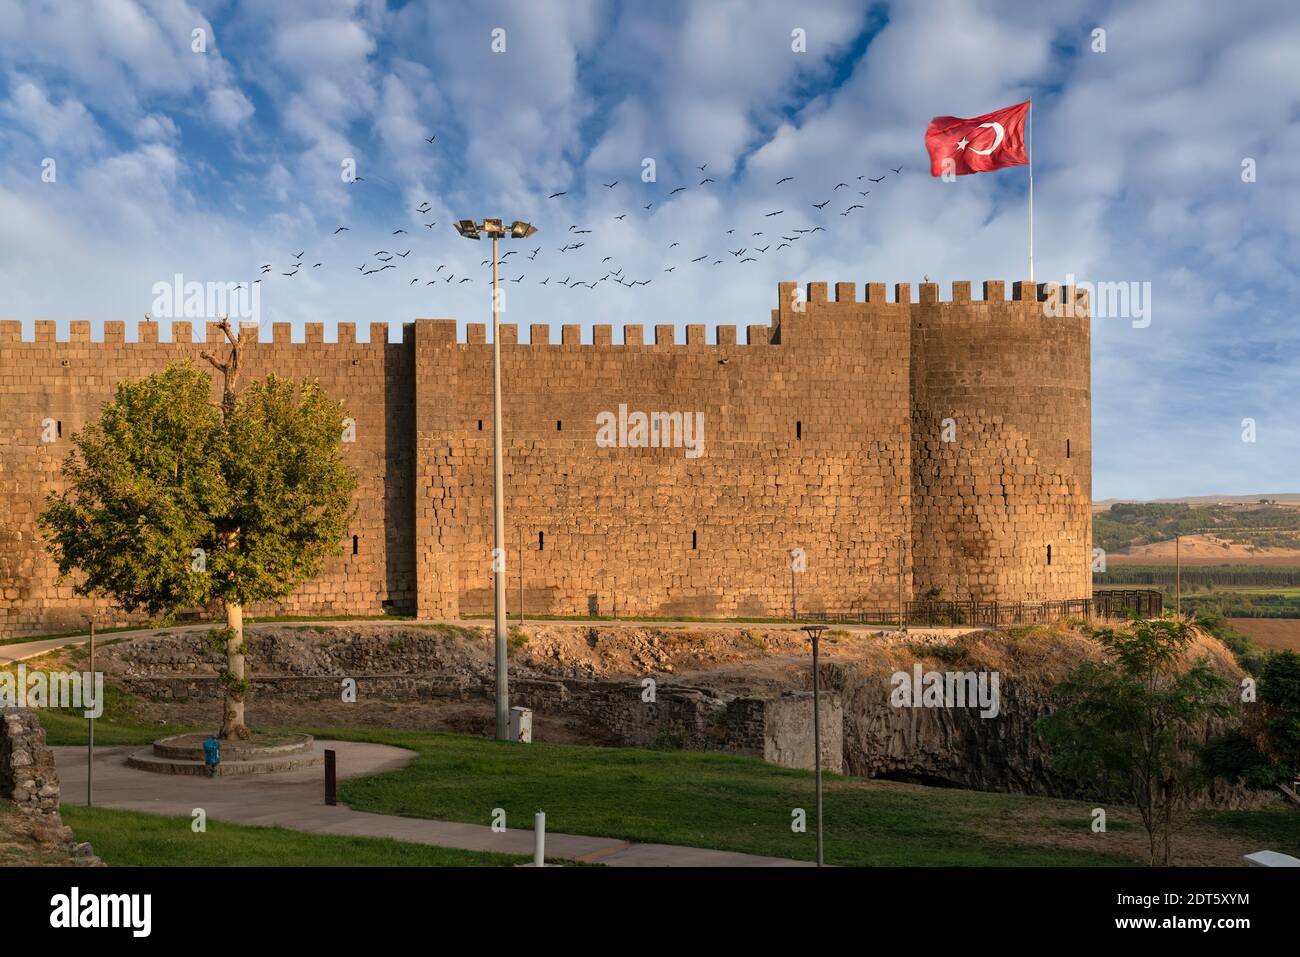 The wall of Diyarbakir (Diyarbakir surlari in Turkish) Stock Photo